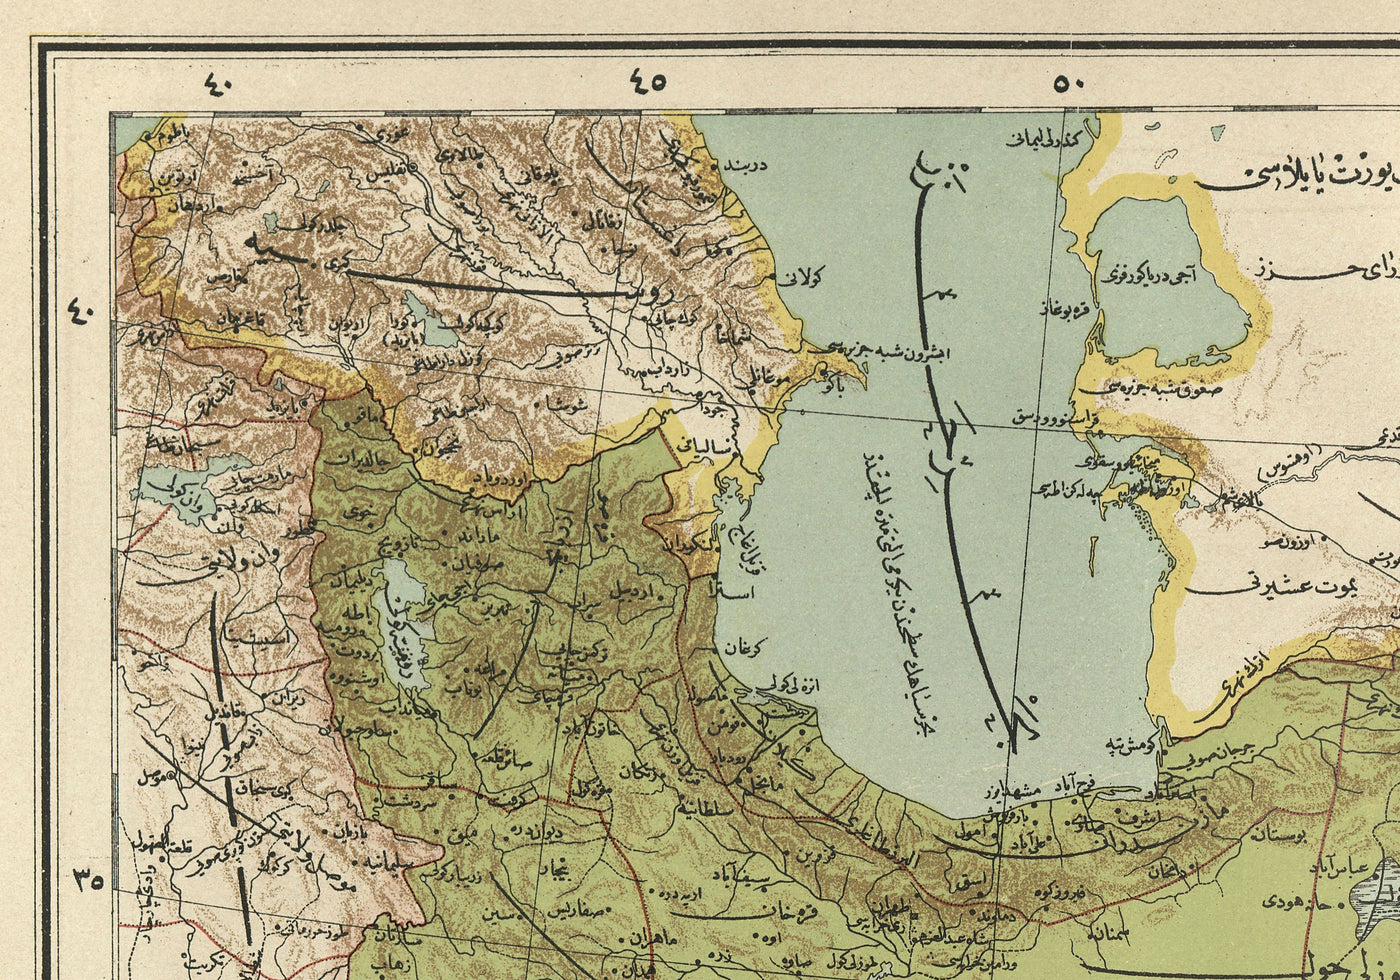 Alte arabische Karte von Iran, Pakistan, Afghanistan und Usbekistan im Jahr 1891 - Arabien, Kuwait, Persischer Golf, Kaspisches Meer, UdSSR